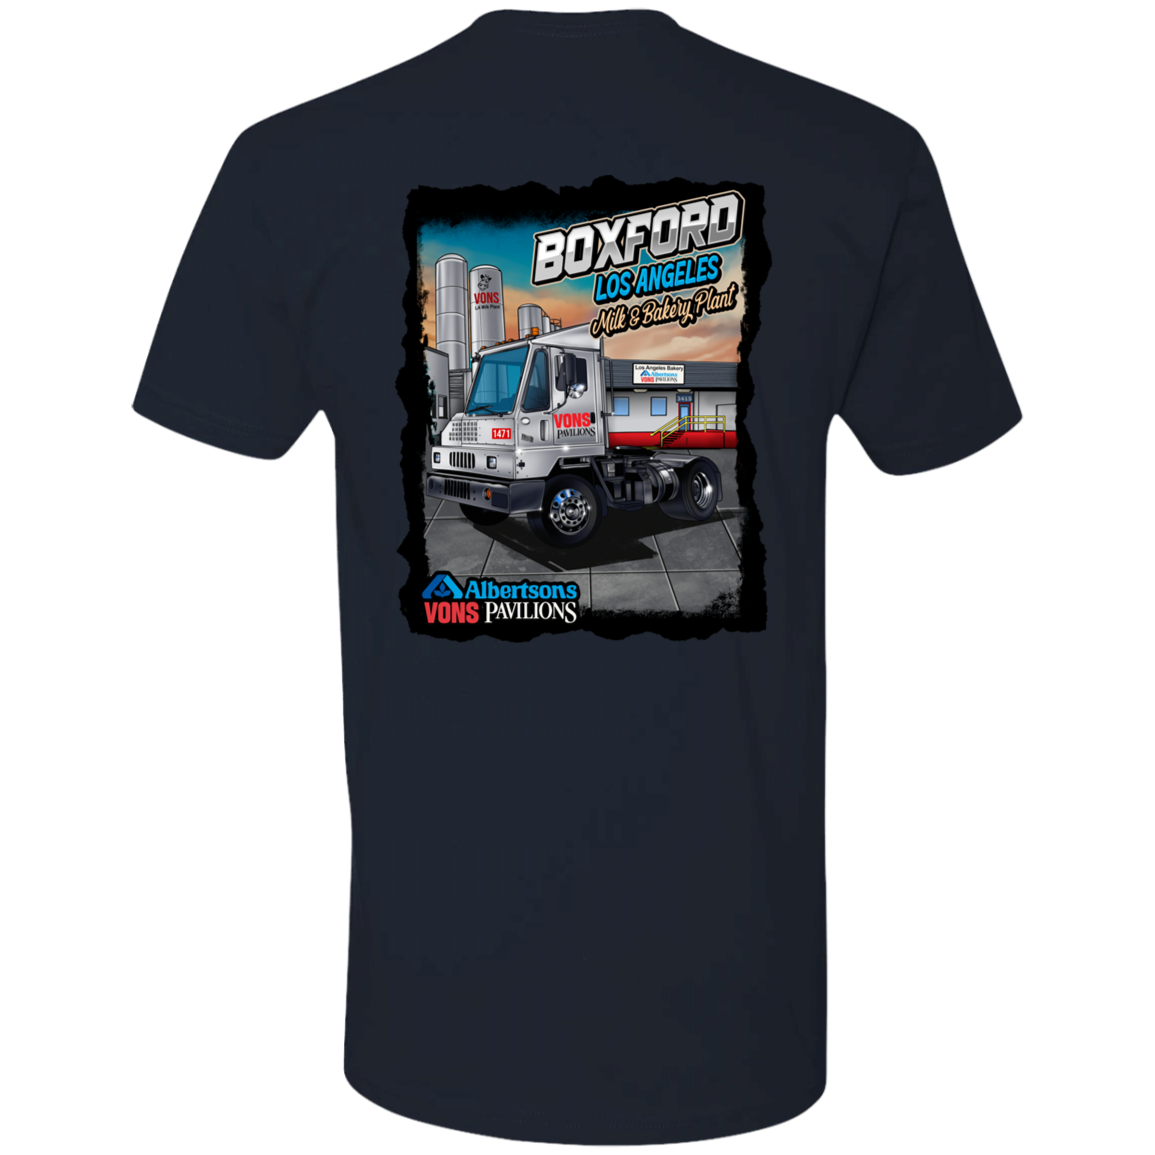 AVP Boxford Shirt